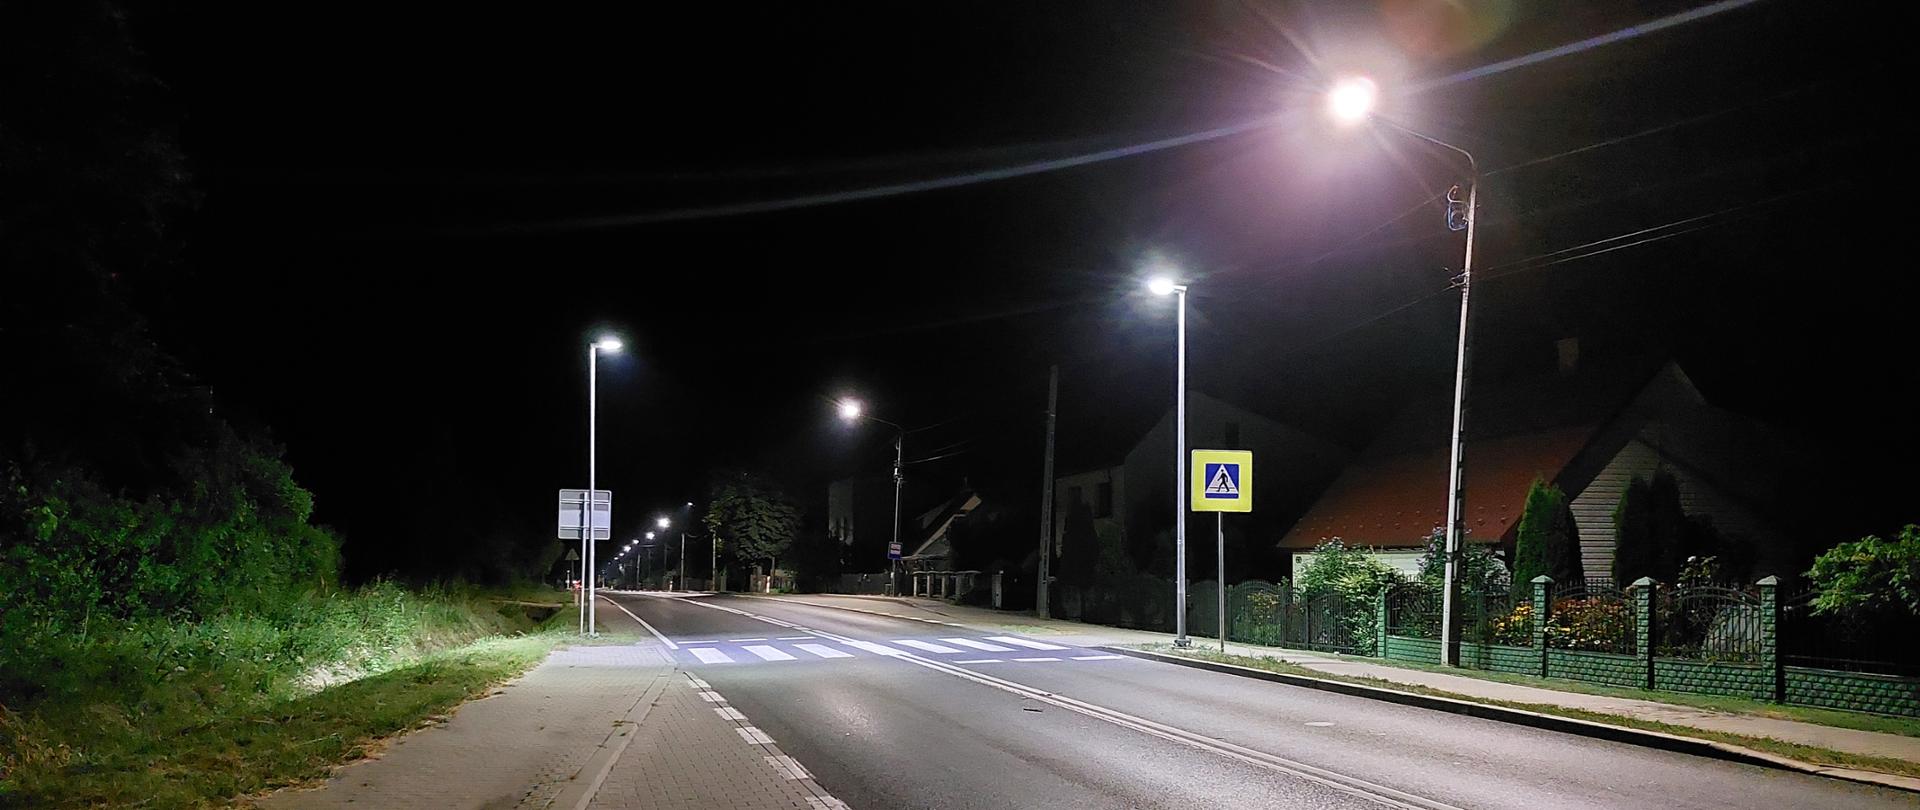 Oświetlone przejście dla pieszych - jednojezdniowa droga nocą, oznakowane przejście dla pieszych, lampy na słupach oświetlające przejście, przy drodze domy